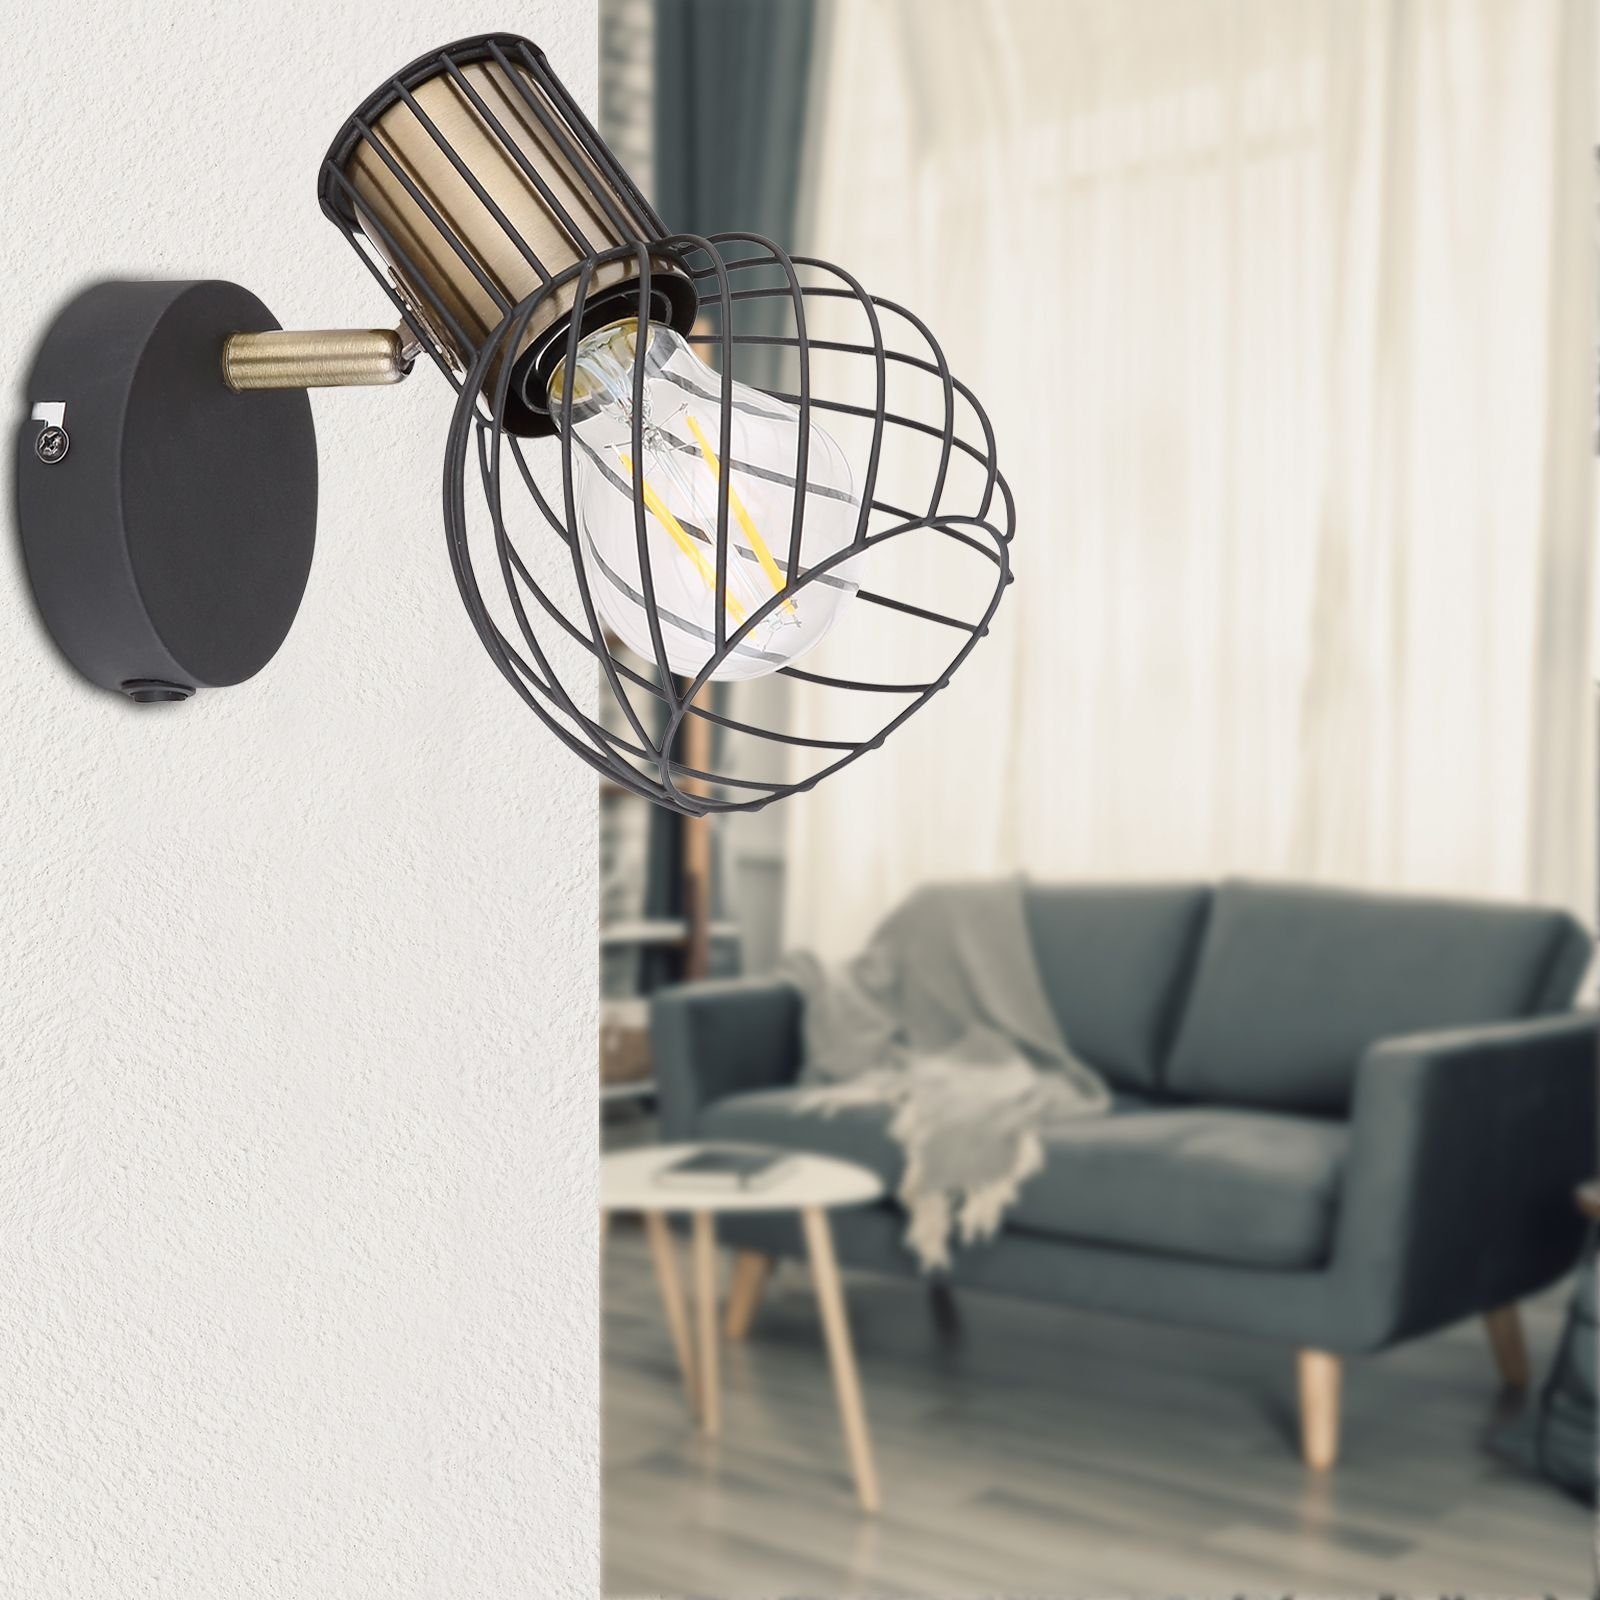 Schalter Wohnzimmer Globo GLOBO Wandleuchte Wandleuchte Wandlampe innen mit